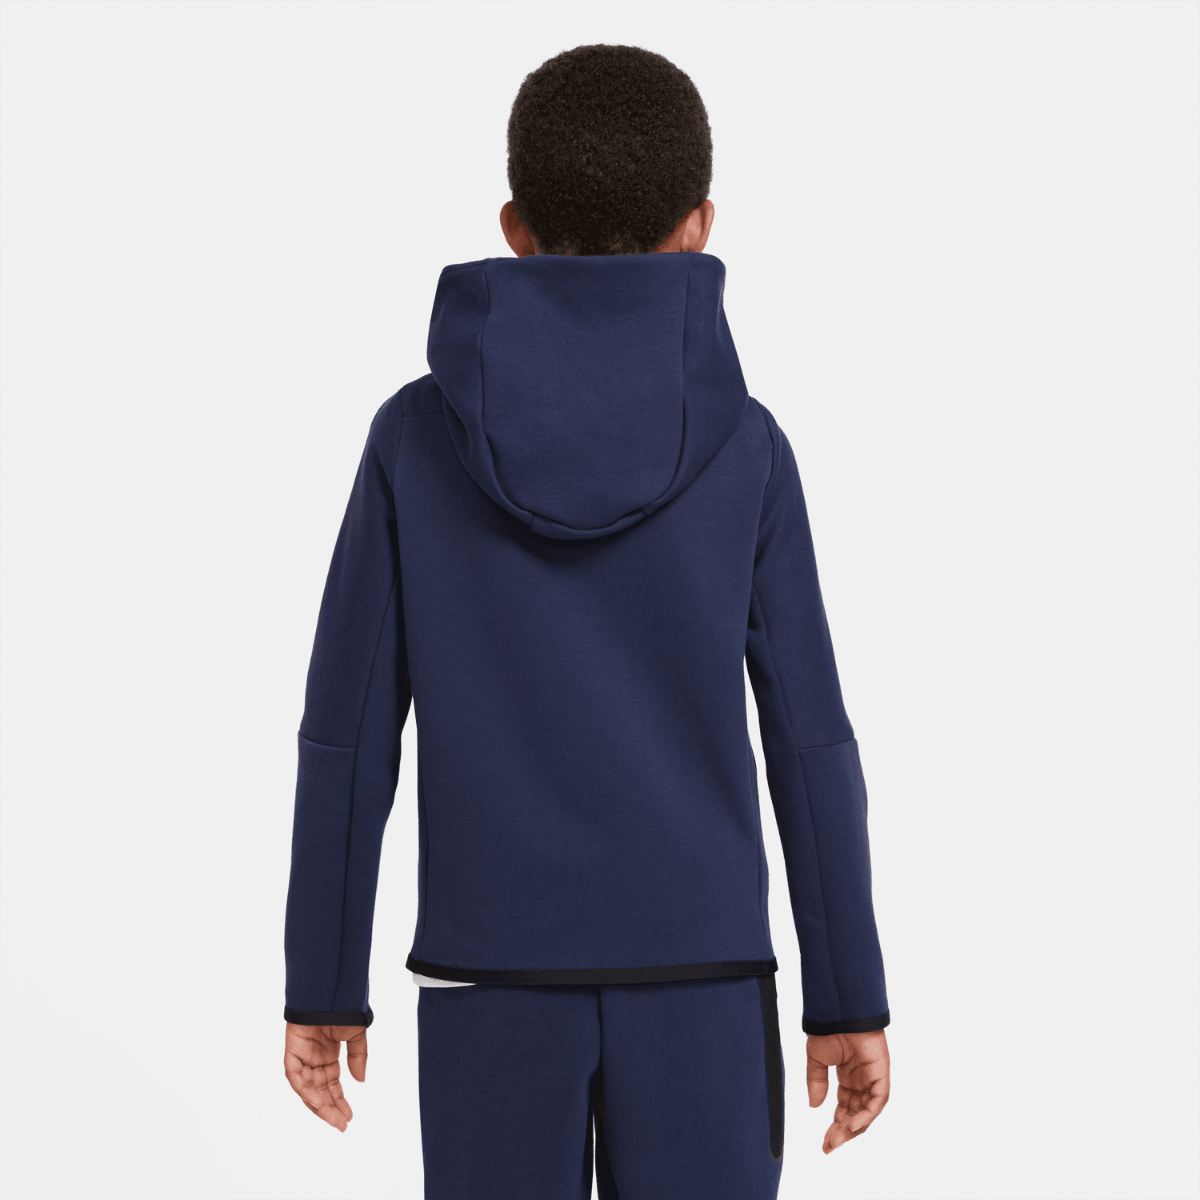 Chaqueta Nike Tech Fleece Junior - Azul/Negro